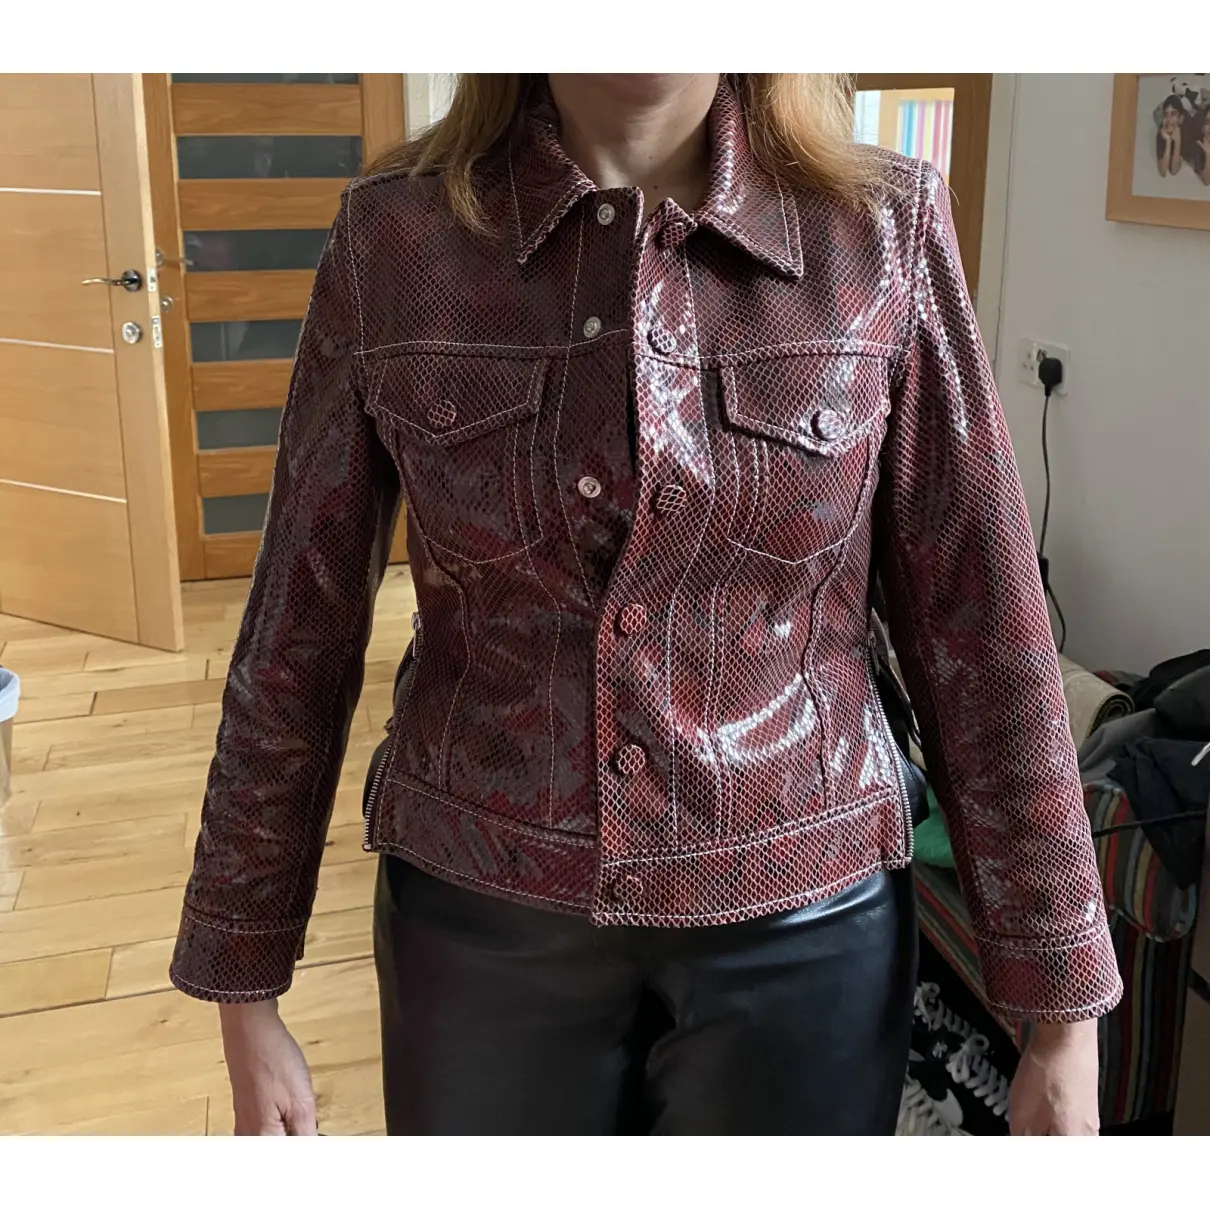 Spring Summer 2020 leather jacket Ganni